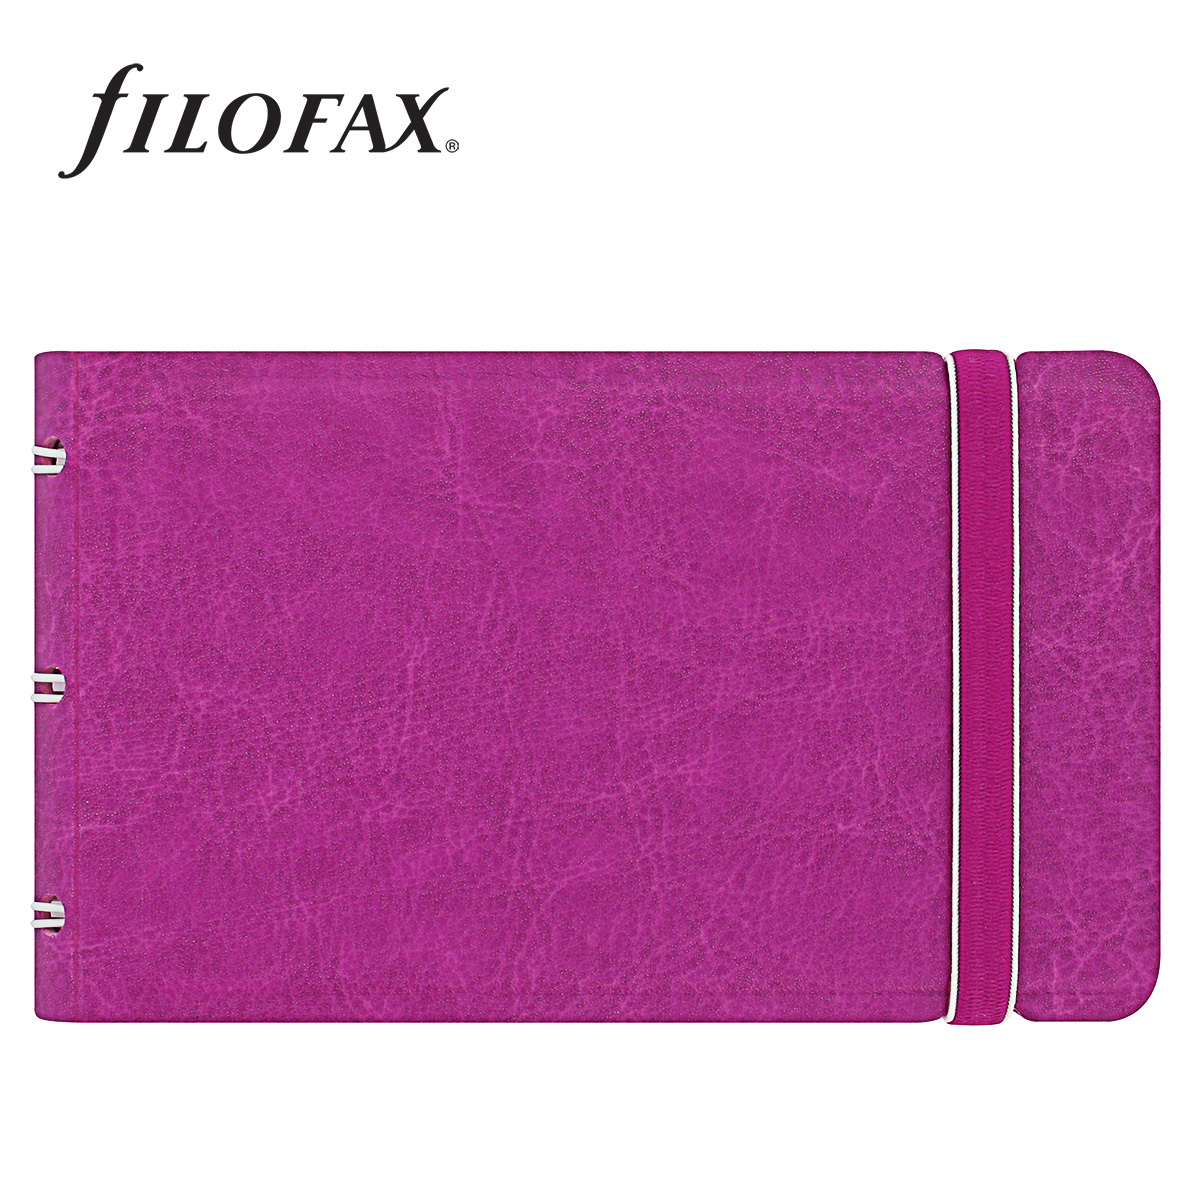 Filofax Notebook Classic Smart, Fuchsia